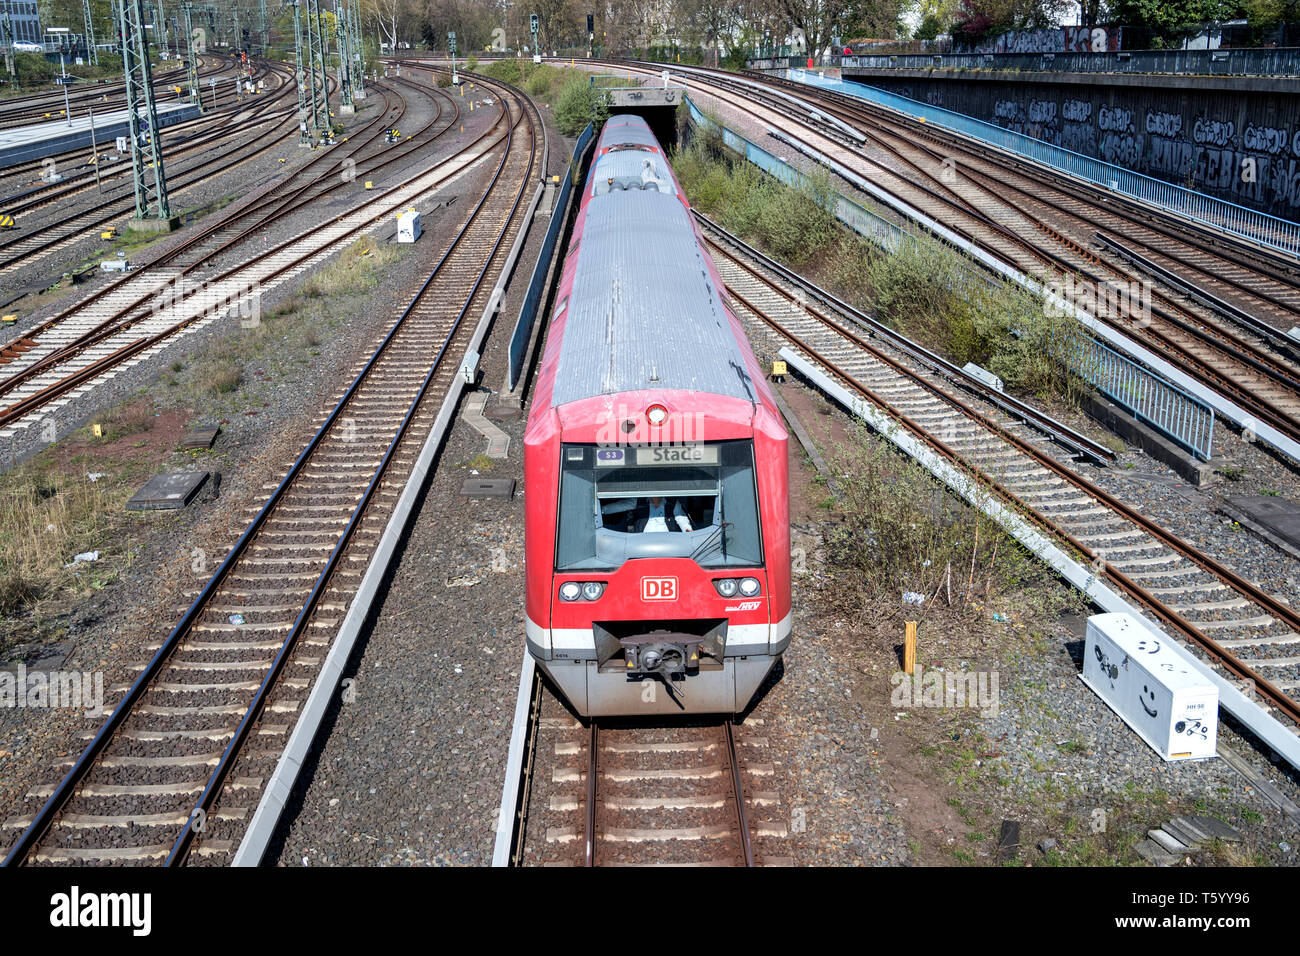 474 classe de train S-Bahn de Hambourg, de transport en commun rapide du réseau ferroviaire dans la région métropolitaine de Hambourg. Banque D'Images